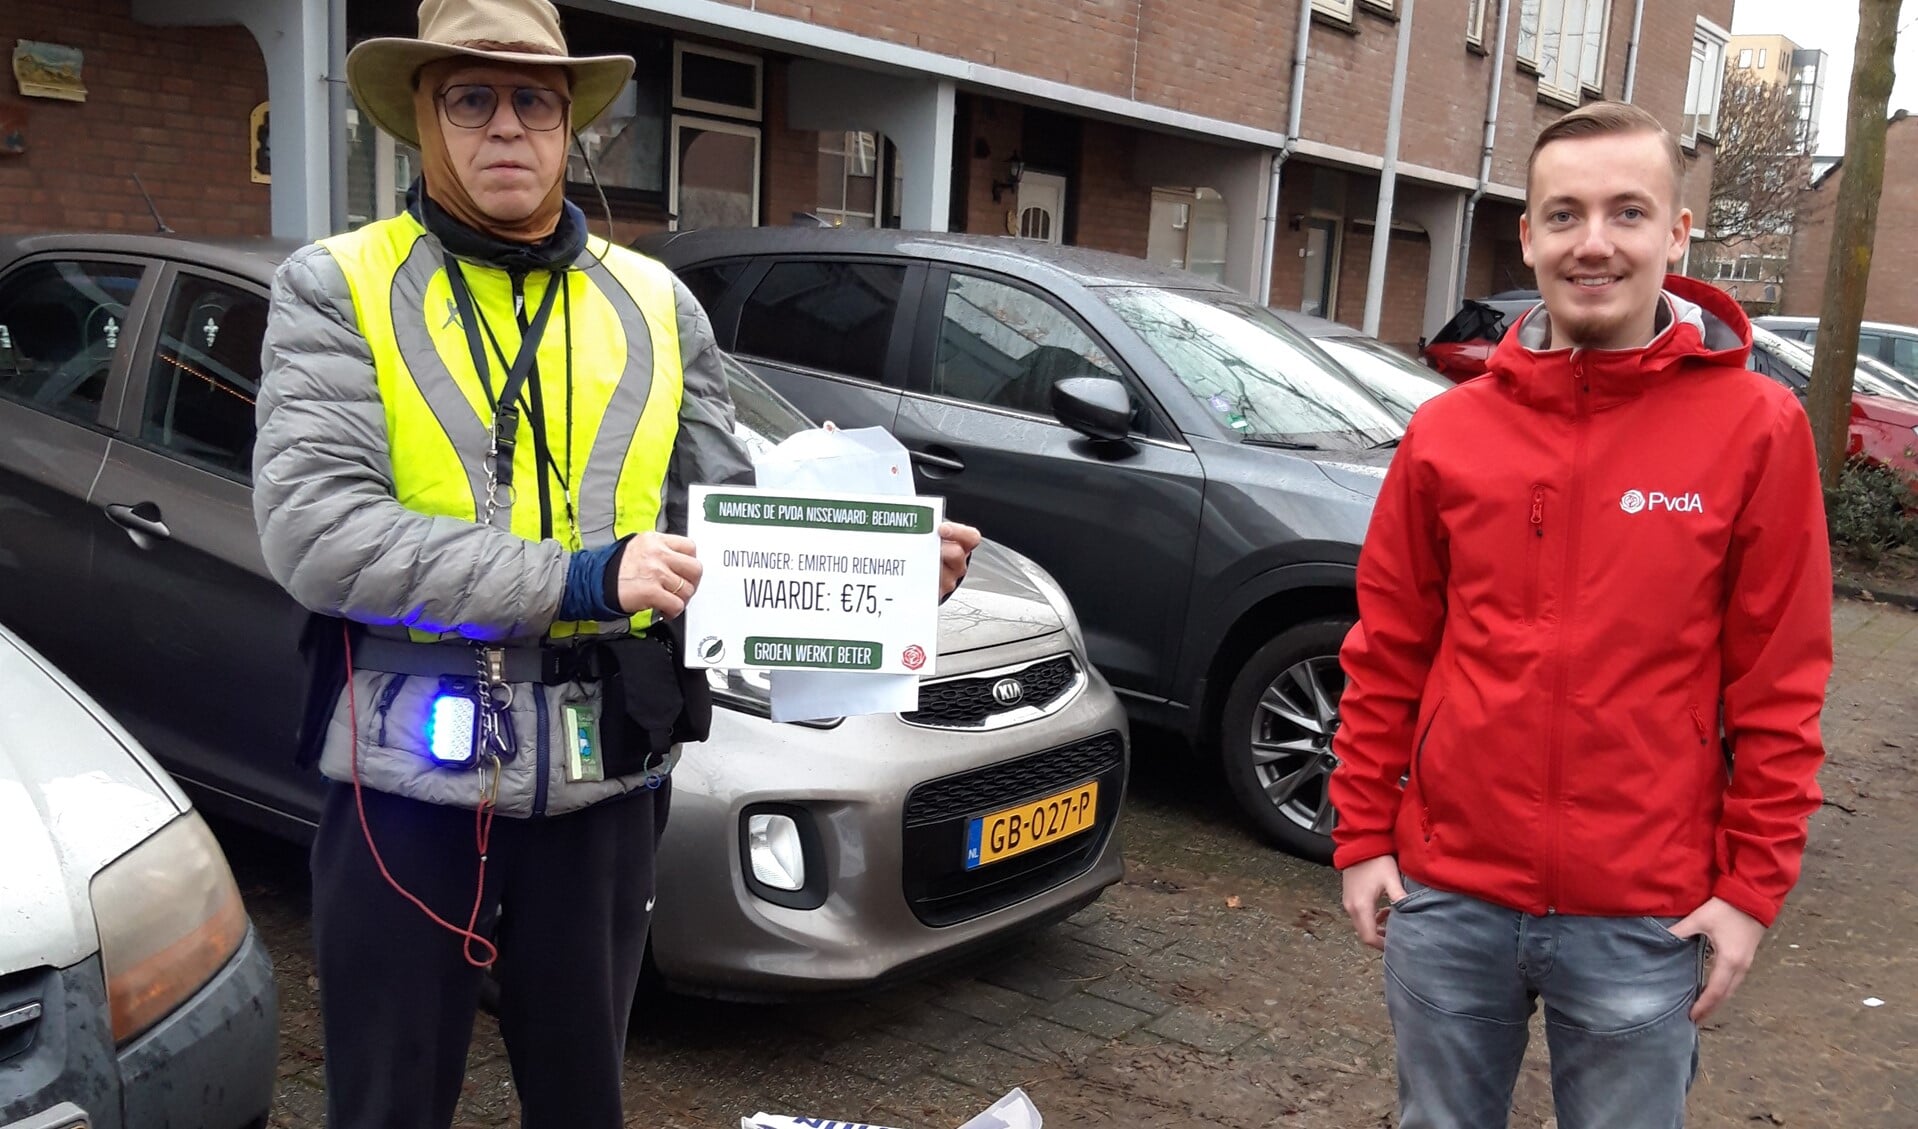 Met de Groene Pluim van de Arbeid wil de PvdA Emirtho Rienhart bedanken voor zijn goede werk in de Gildenwijk